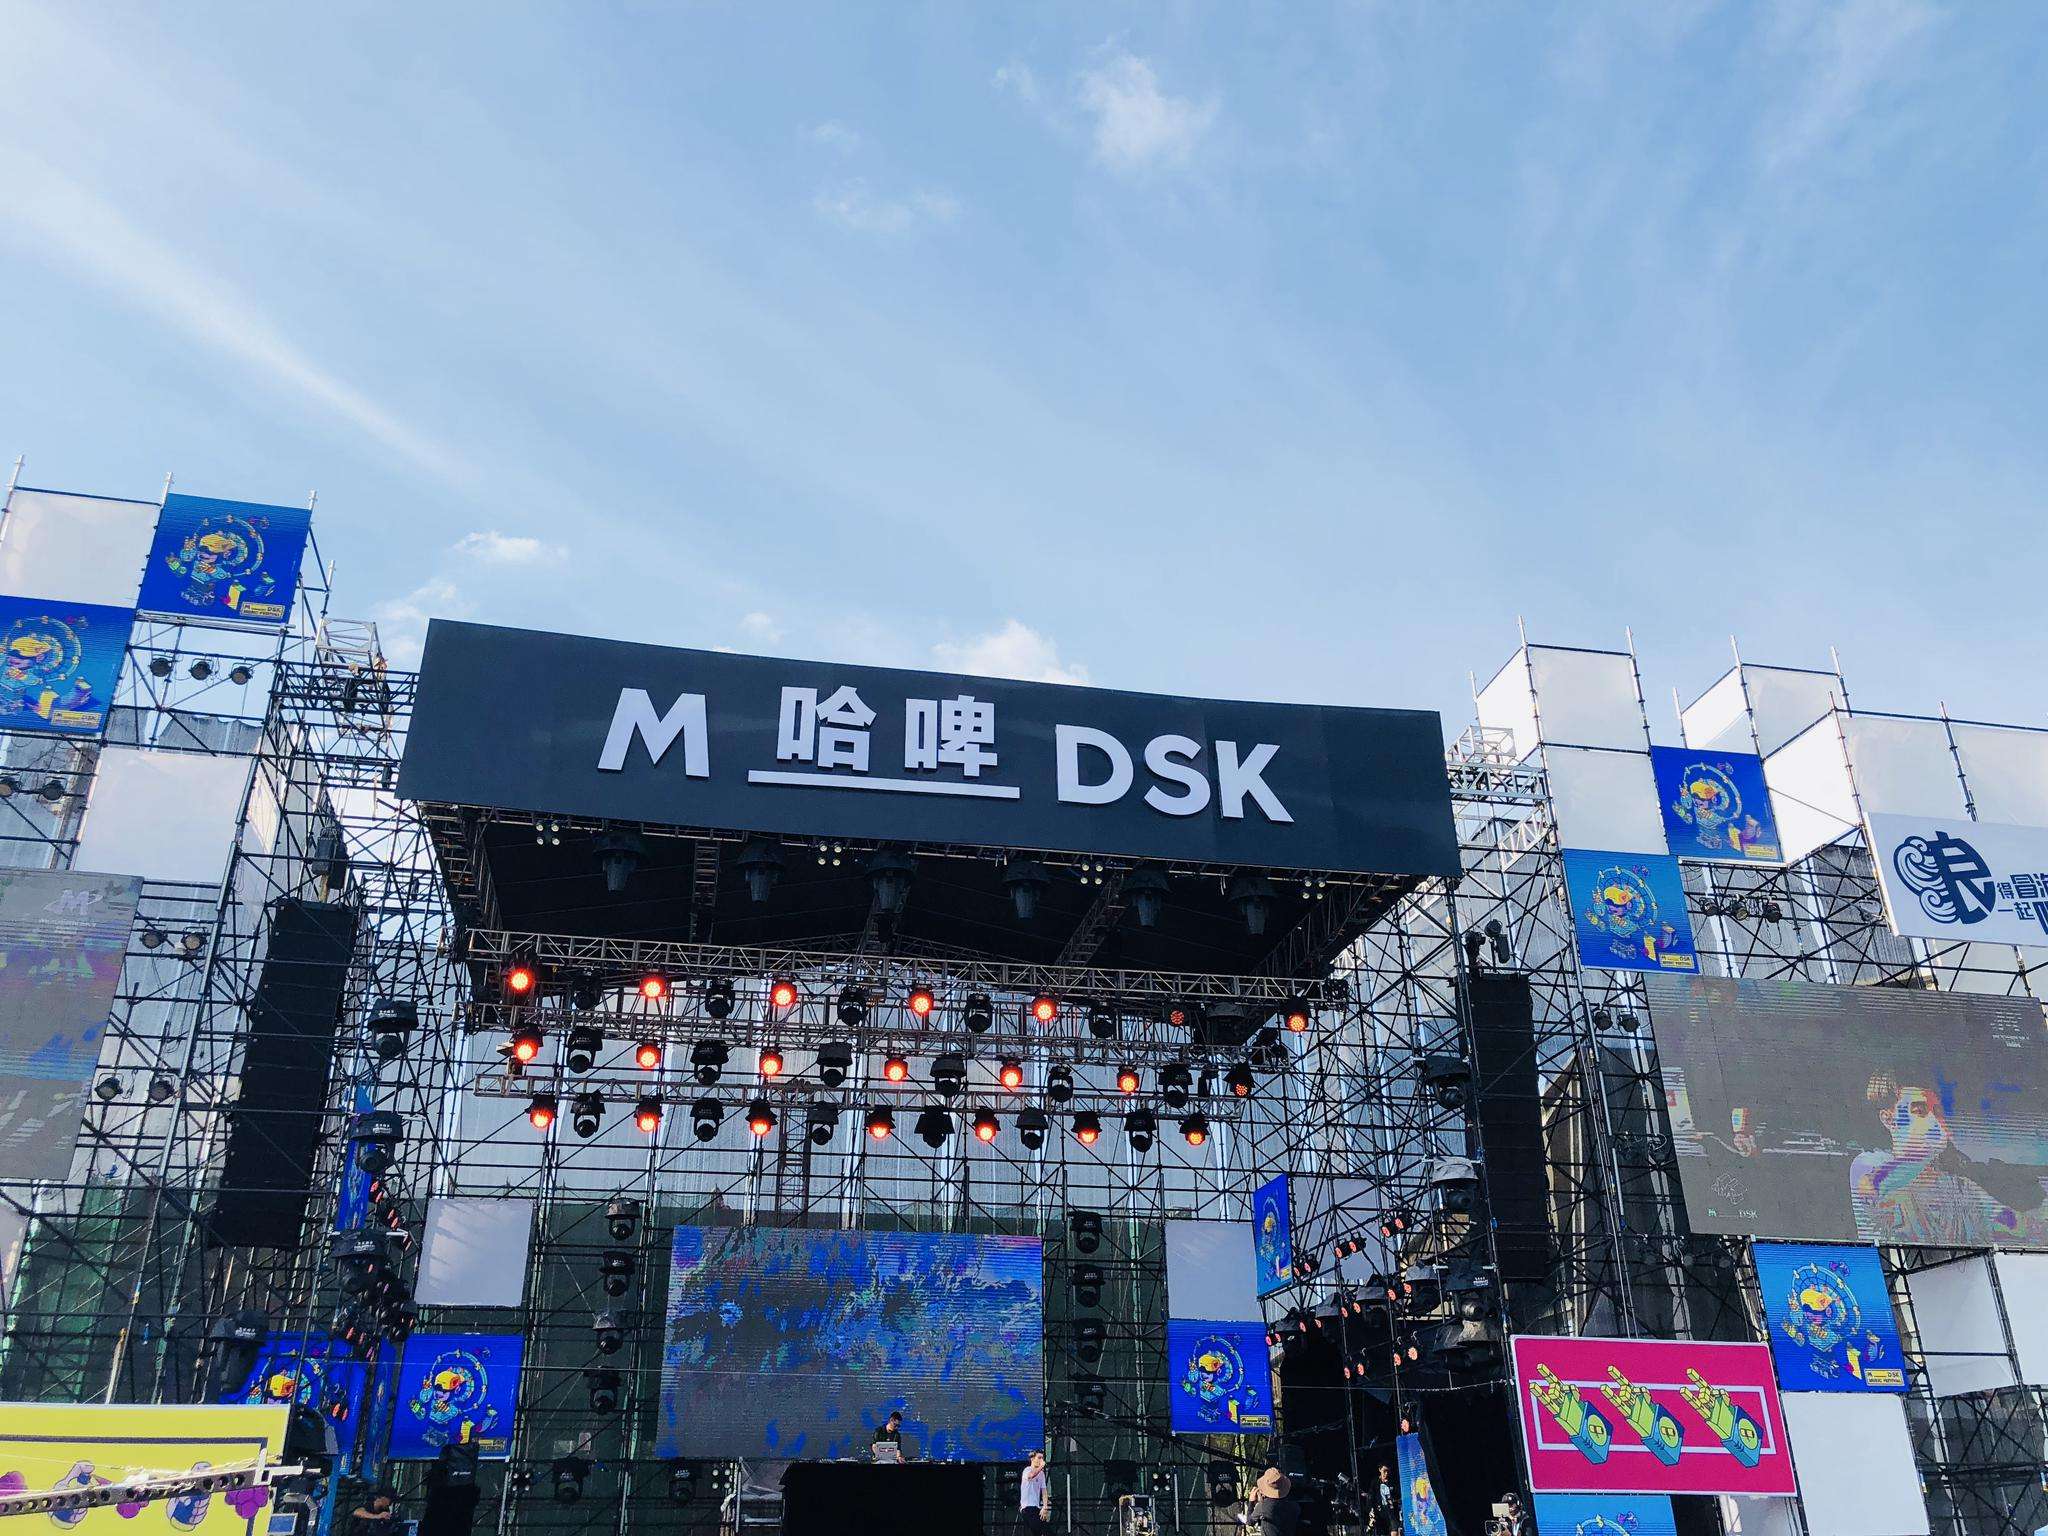 2020长沙mdsk音乐节